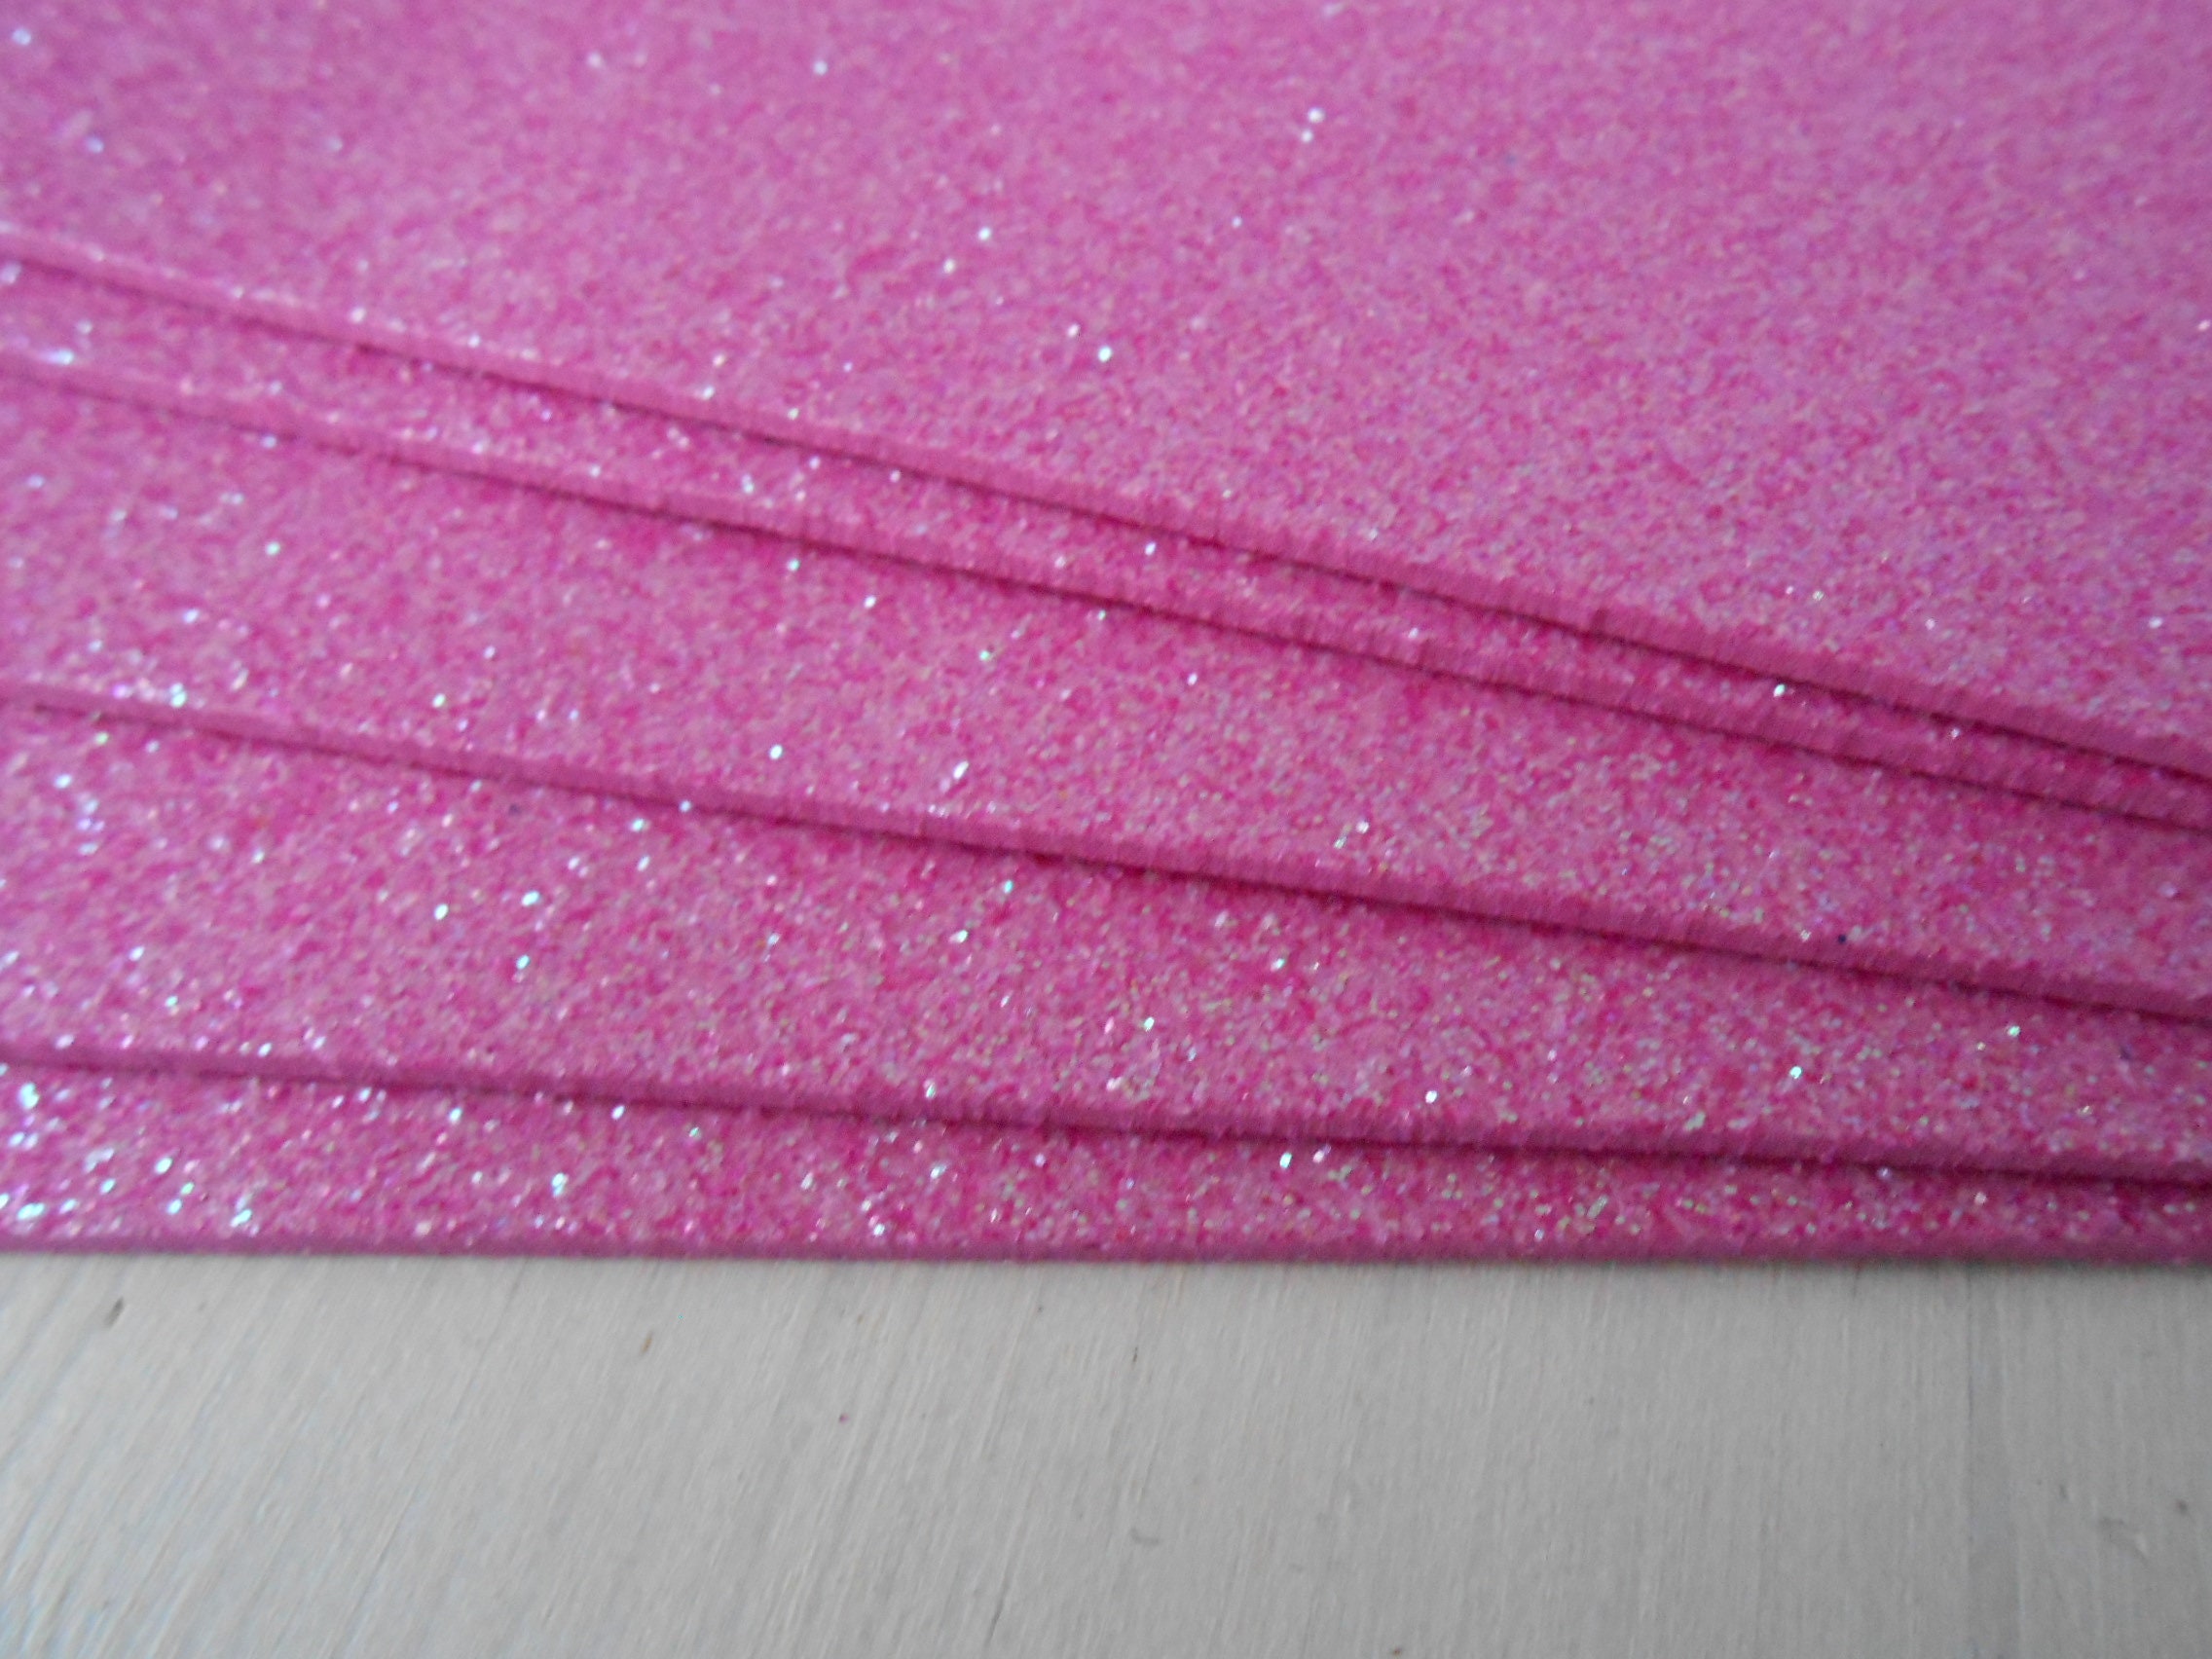 Moosgummi foam rubber self-adhesive 5 sheets gliter BASIC